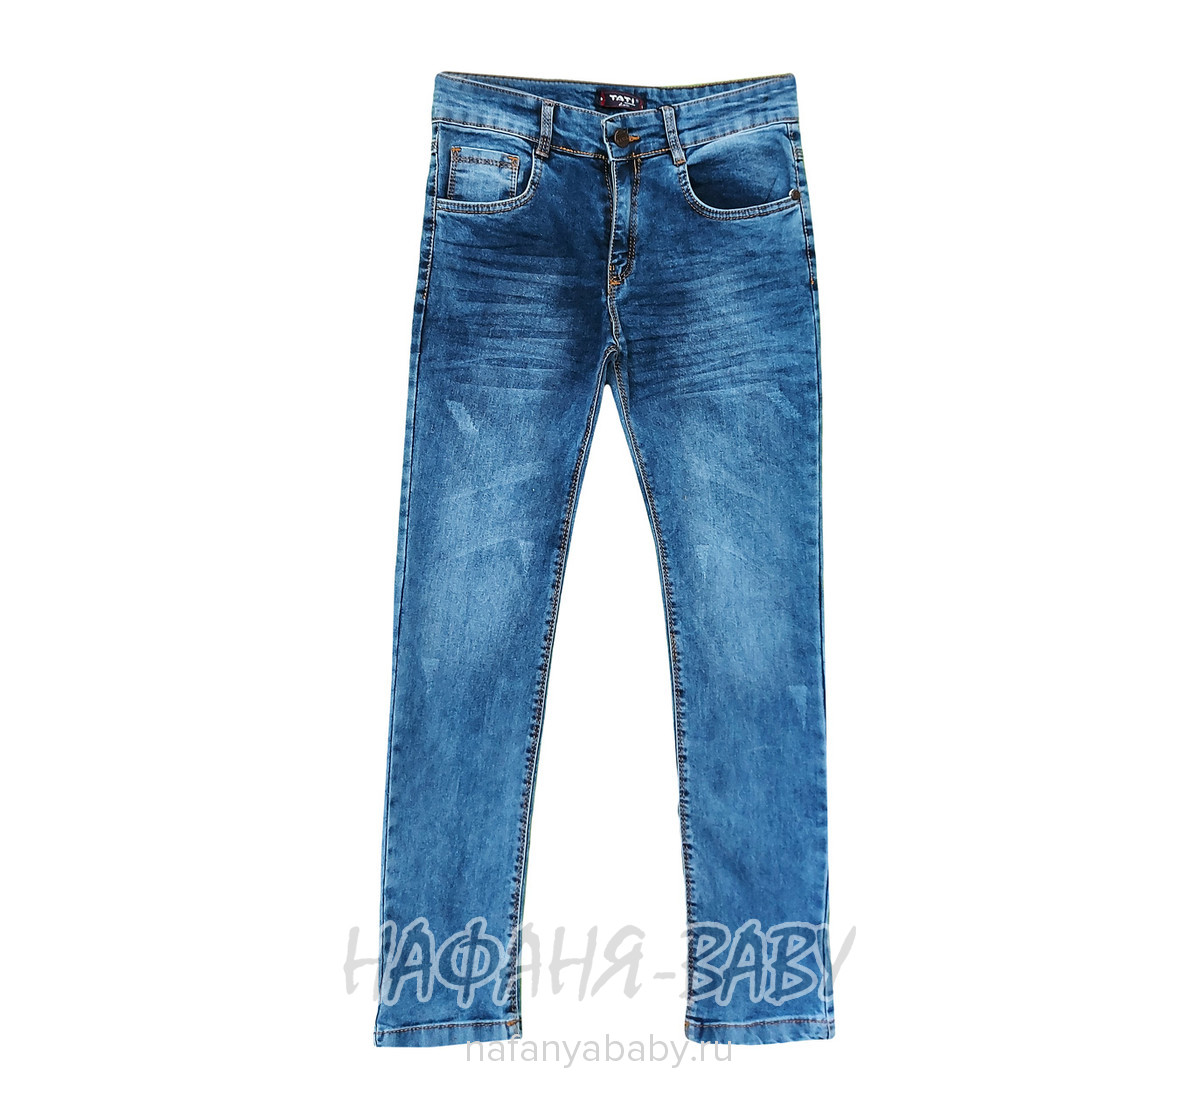 Подростковые джинсы TATI Jeans арт: 6434, 10-15 лет, оптом Турция